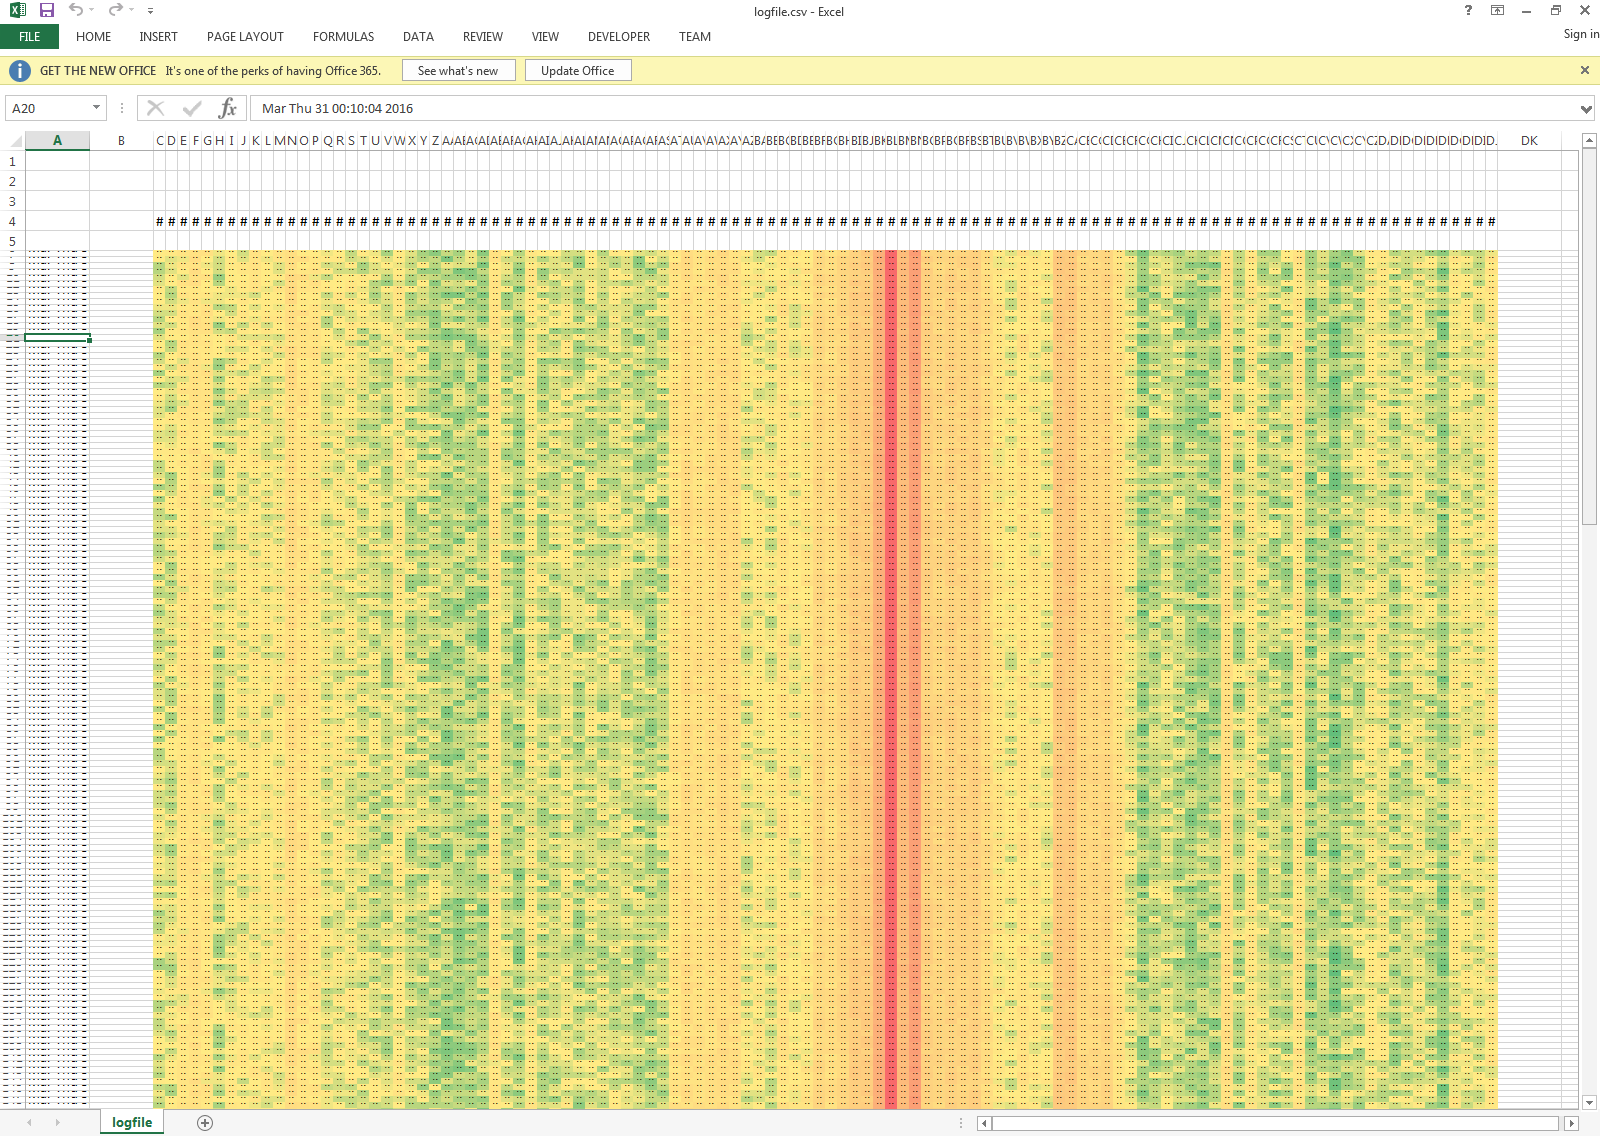 Touchstone RF spectrum analyzer software -- Data Logging mode